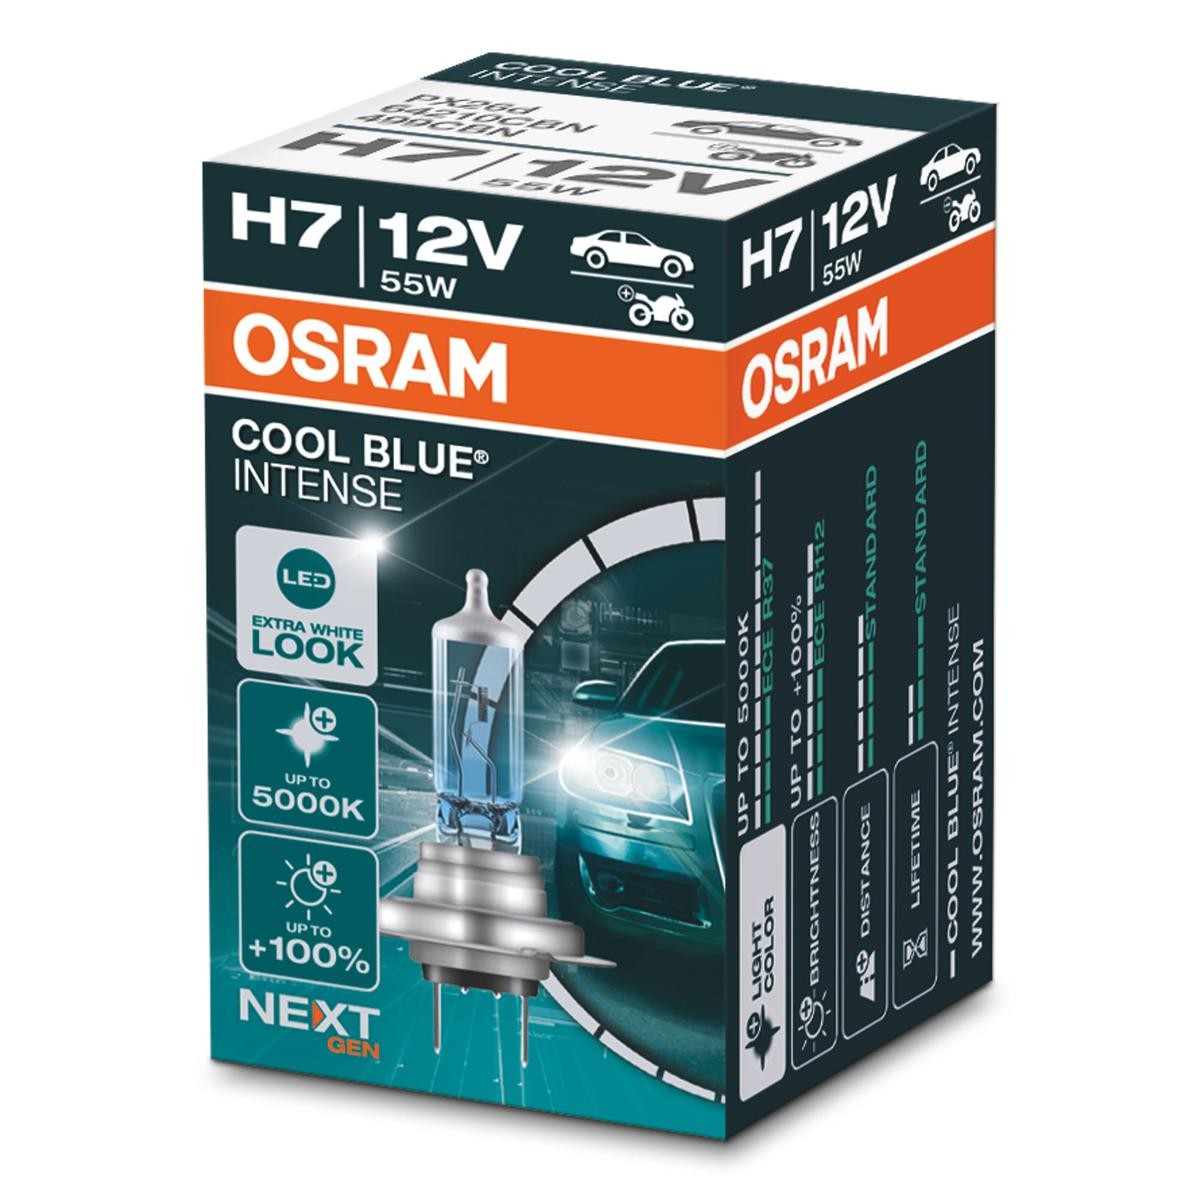 OSRAM H7 Cool Blue Intense Abblendlicht 12V 55W kaufen